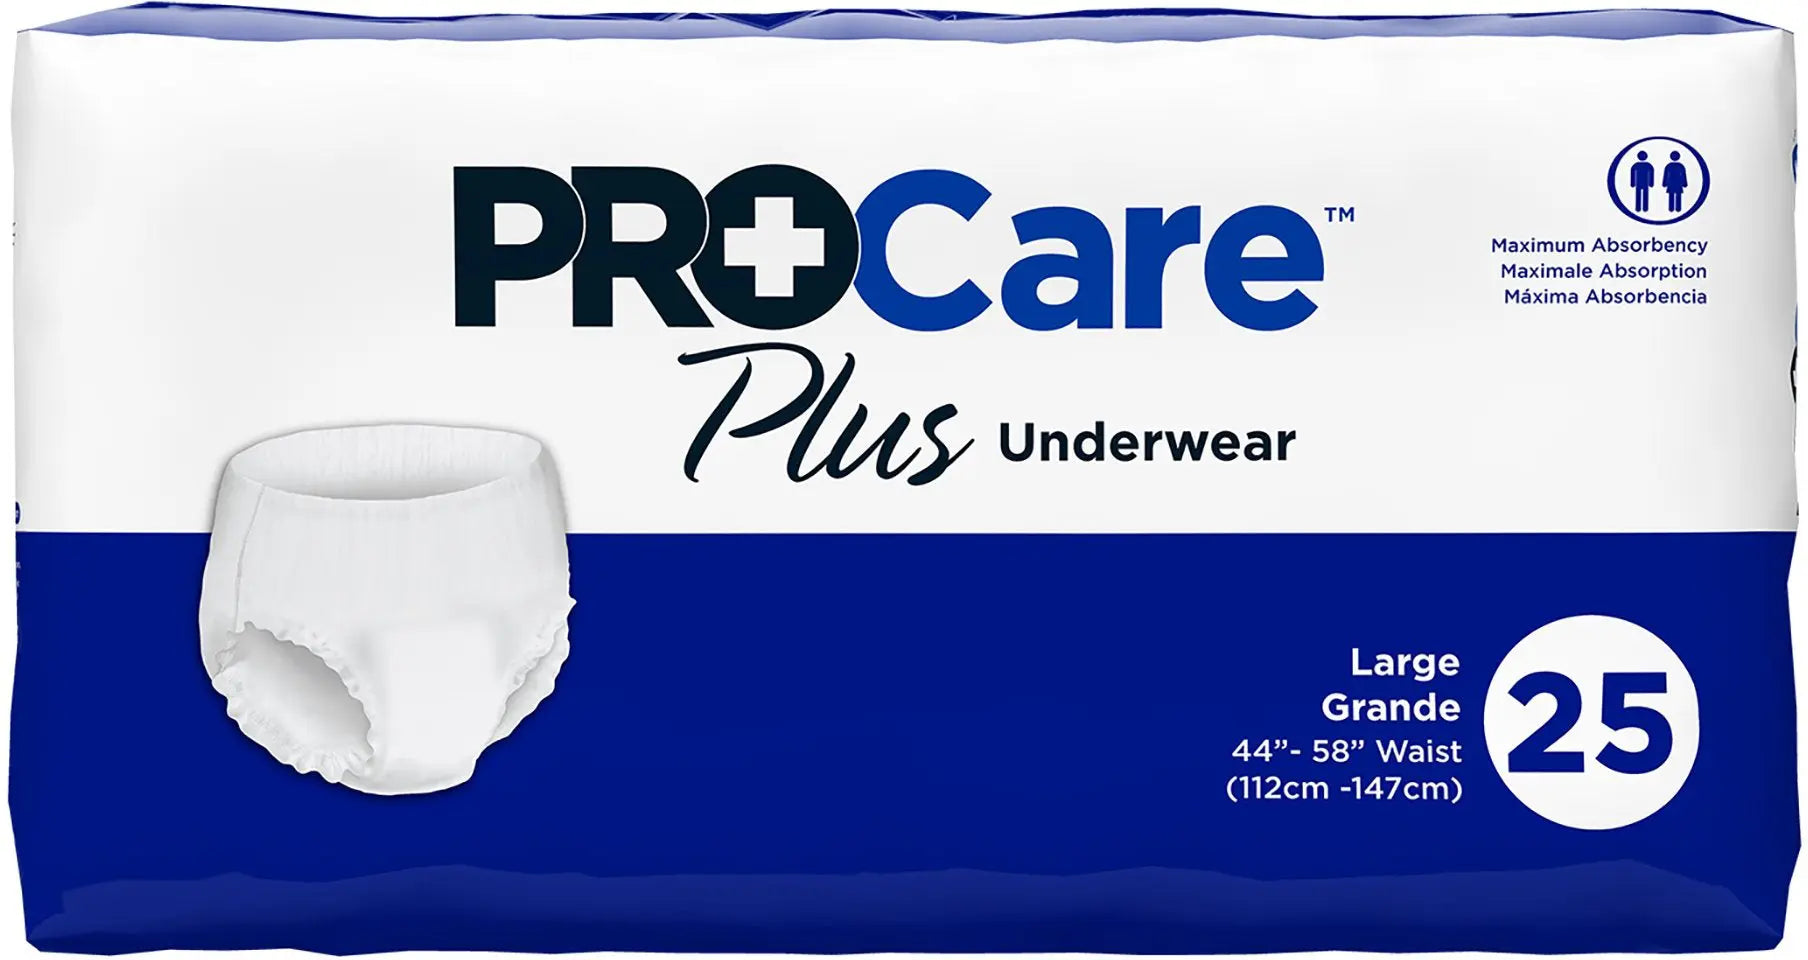 PROCARE Plus Underwear Size Large 44”-58” Waist 25 Pcs. Maximum